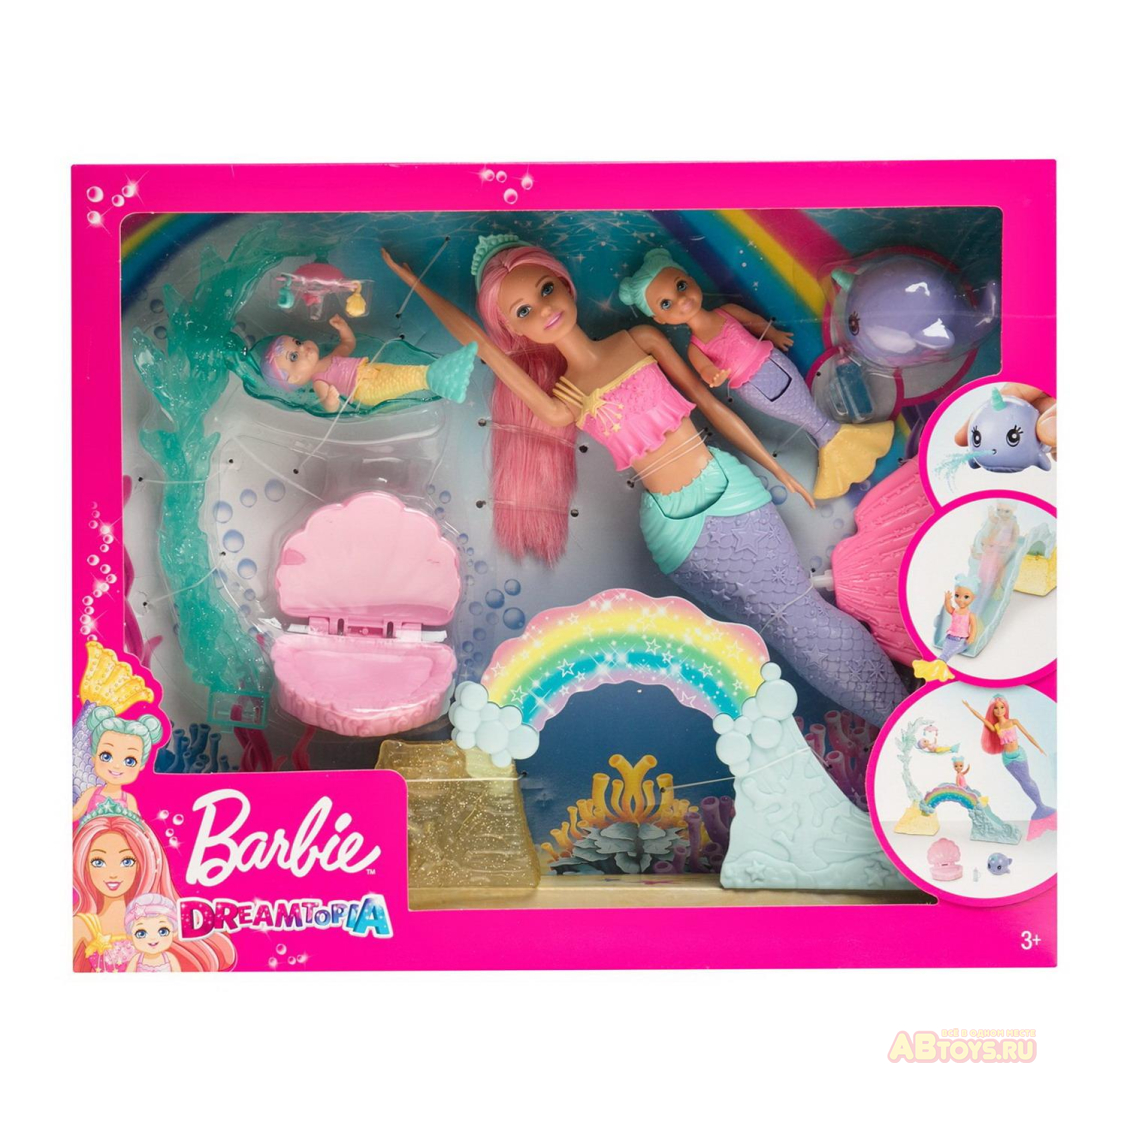 Игровой набор Mattel Barbie Барби с маленькими русалочками